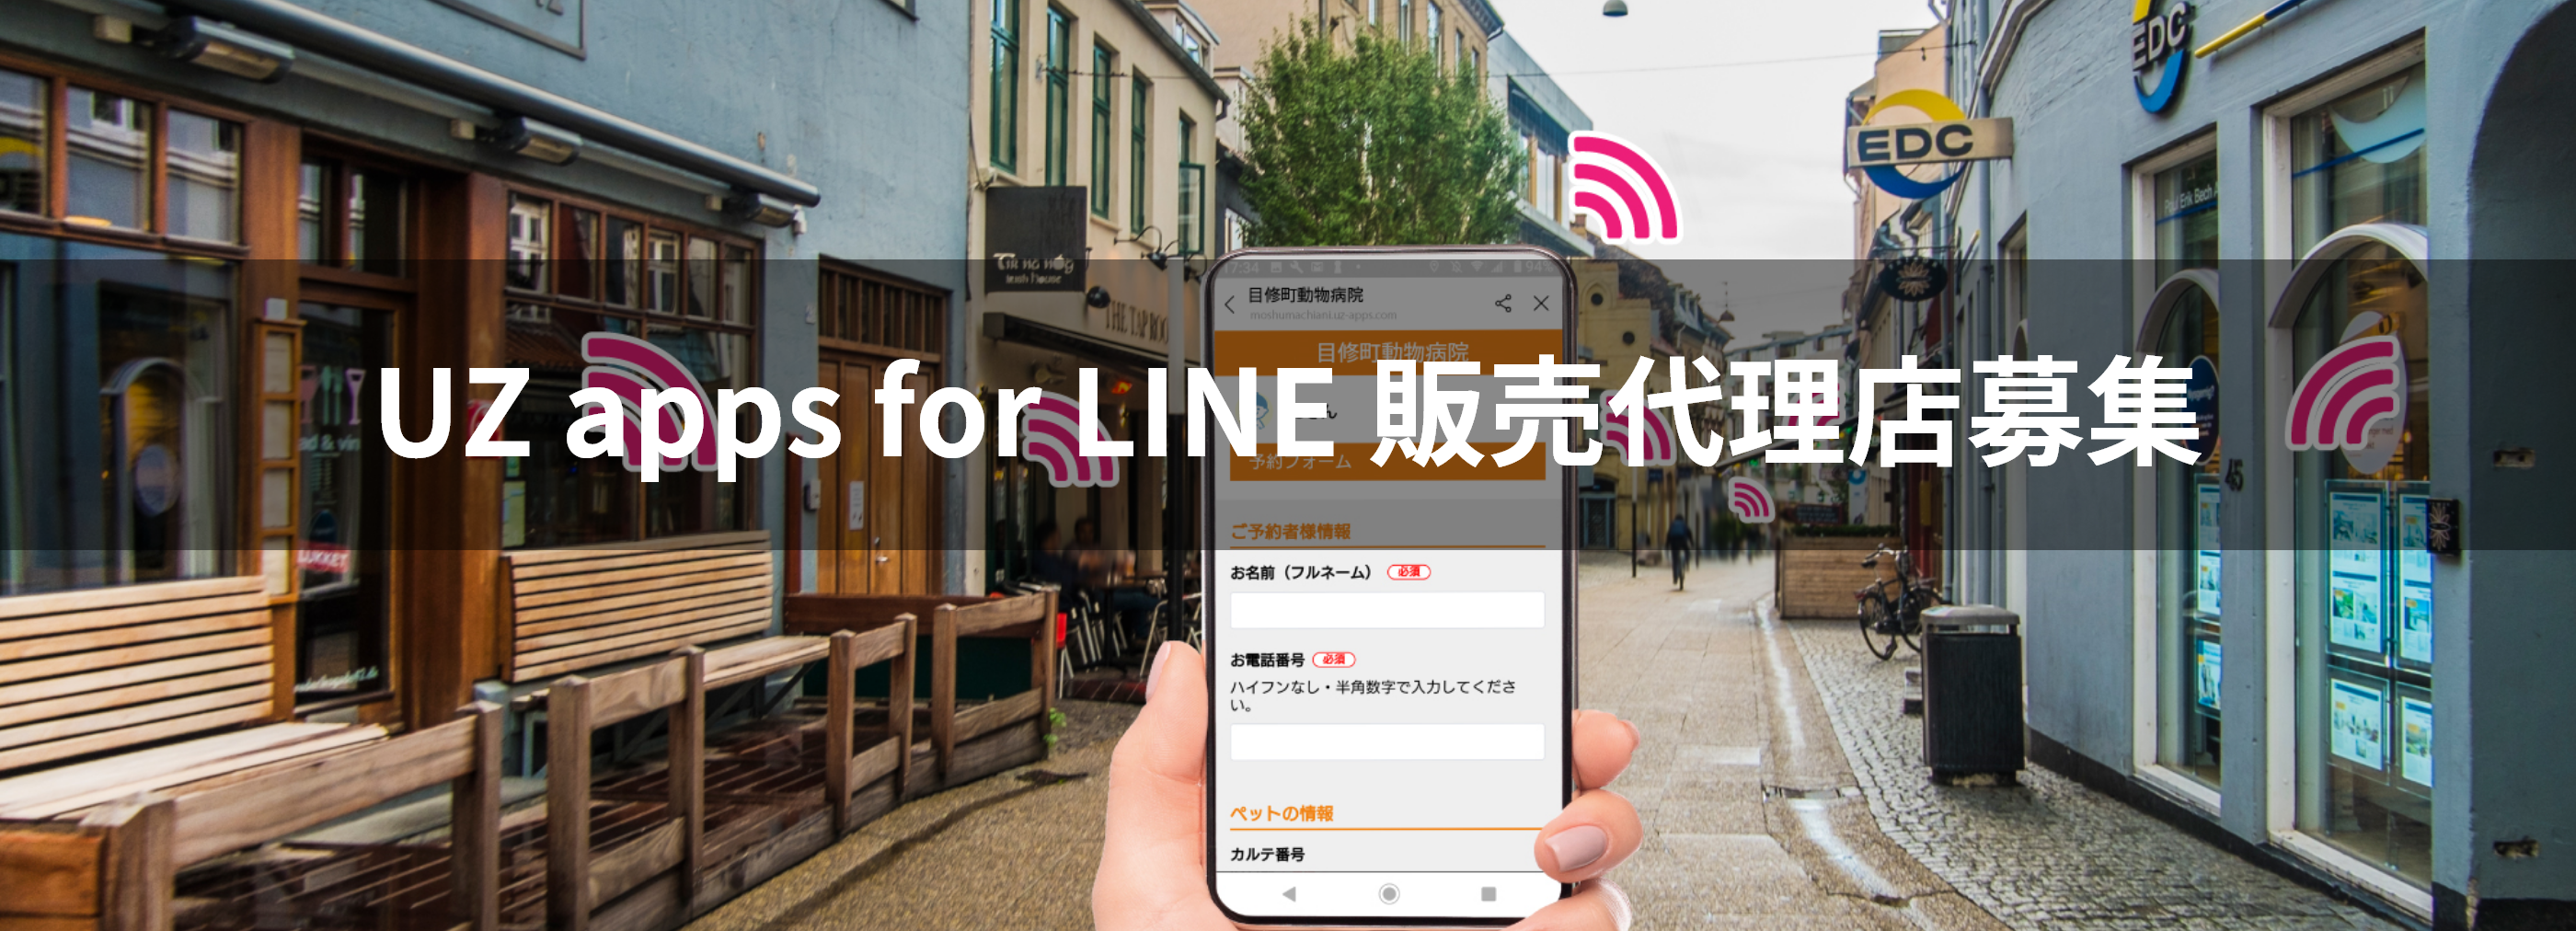 UZ apps for LINE 販売代理店募集